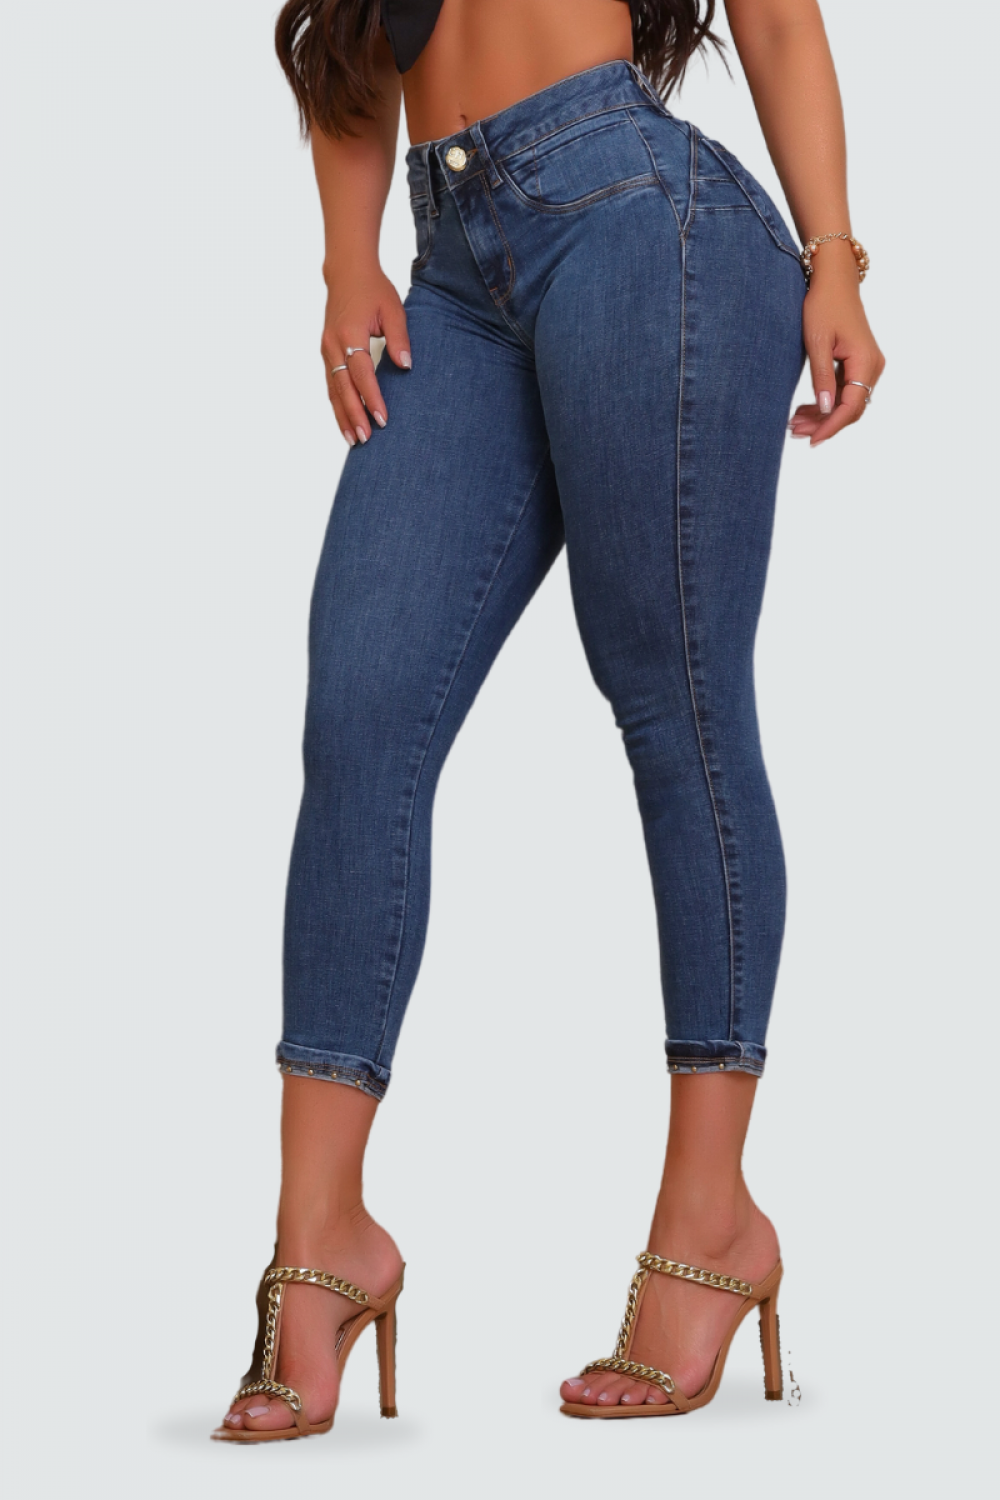 Calça Capri Feminina Sarja Jeans Cintura Média Com Lycra Levanta Bumbum  Modeladora Conceito Jeans 7878 Cores no Shoptime